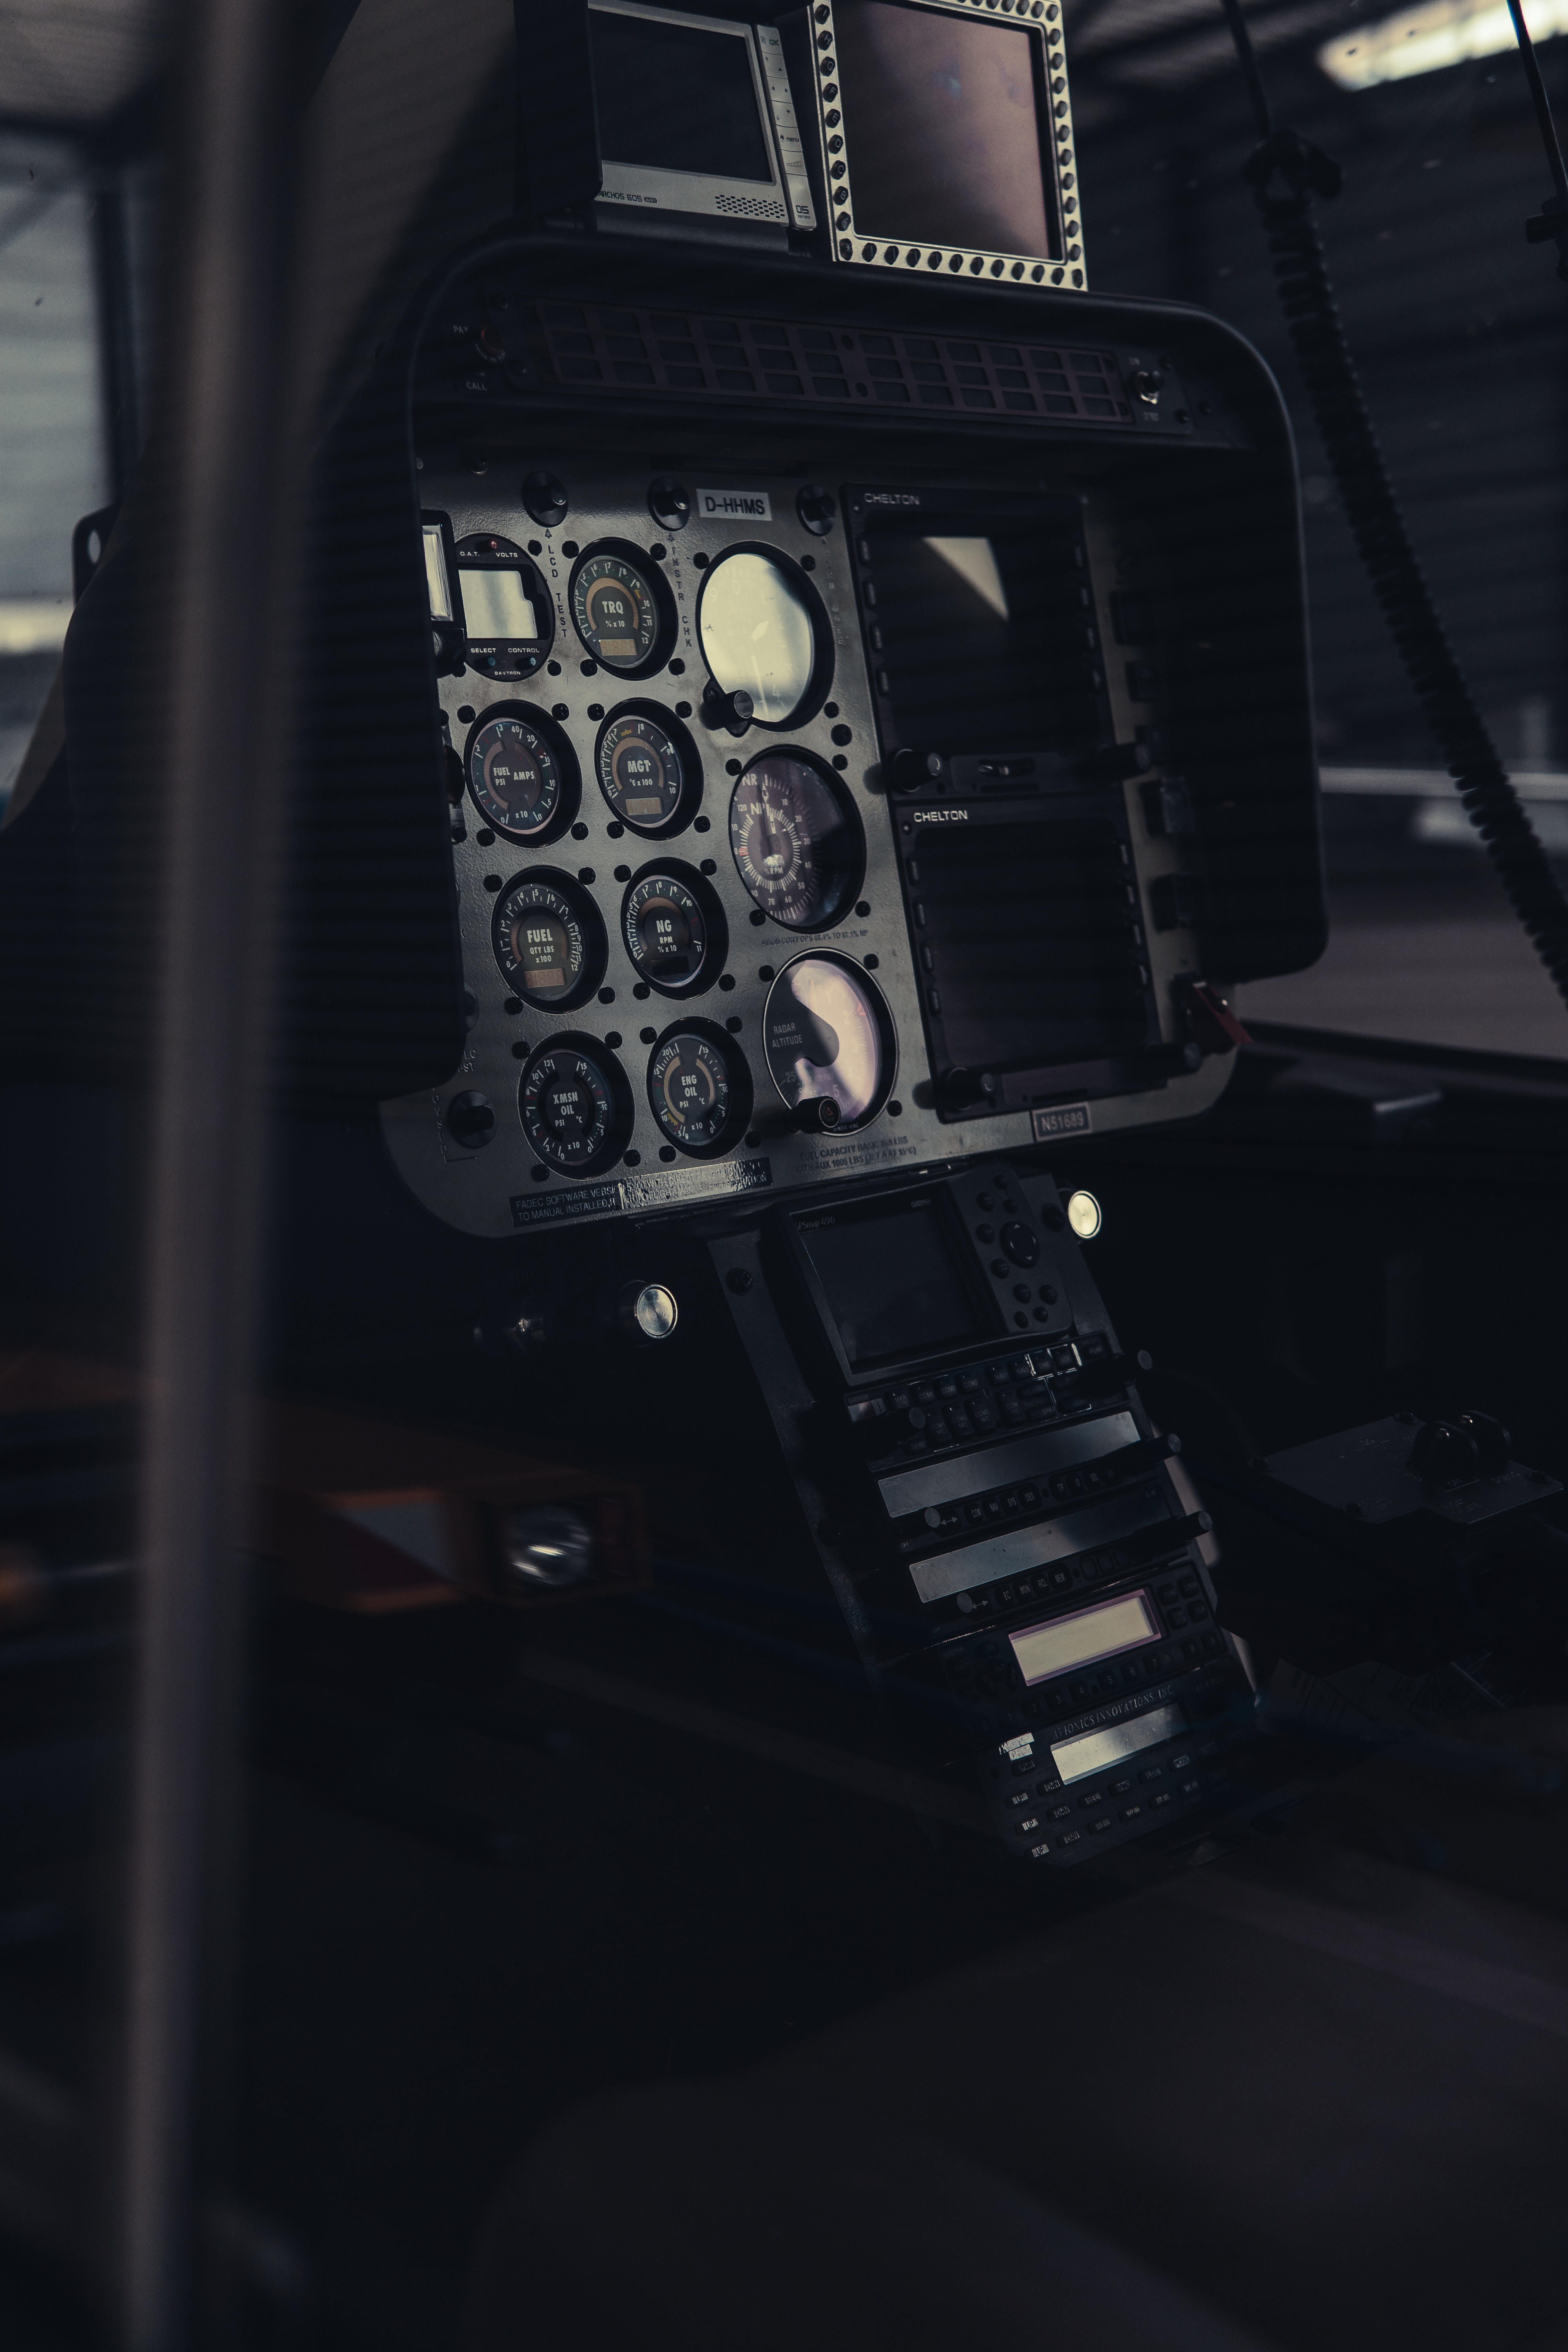 miscellanea, equipment, cockpit, miscellaneous, devices, flight deck, control, management